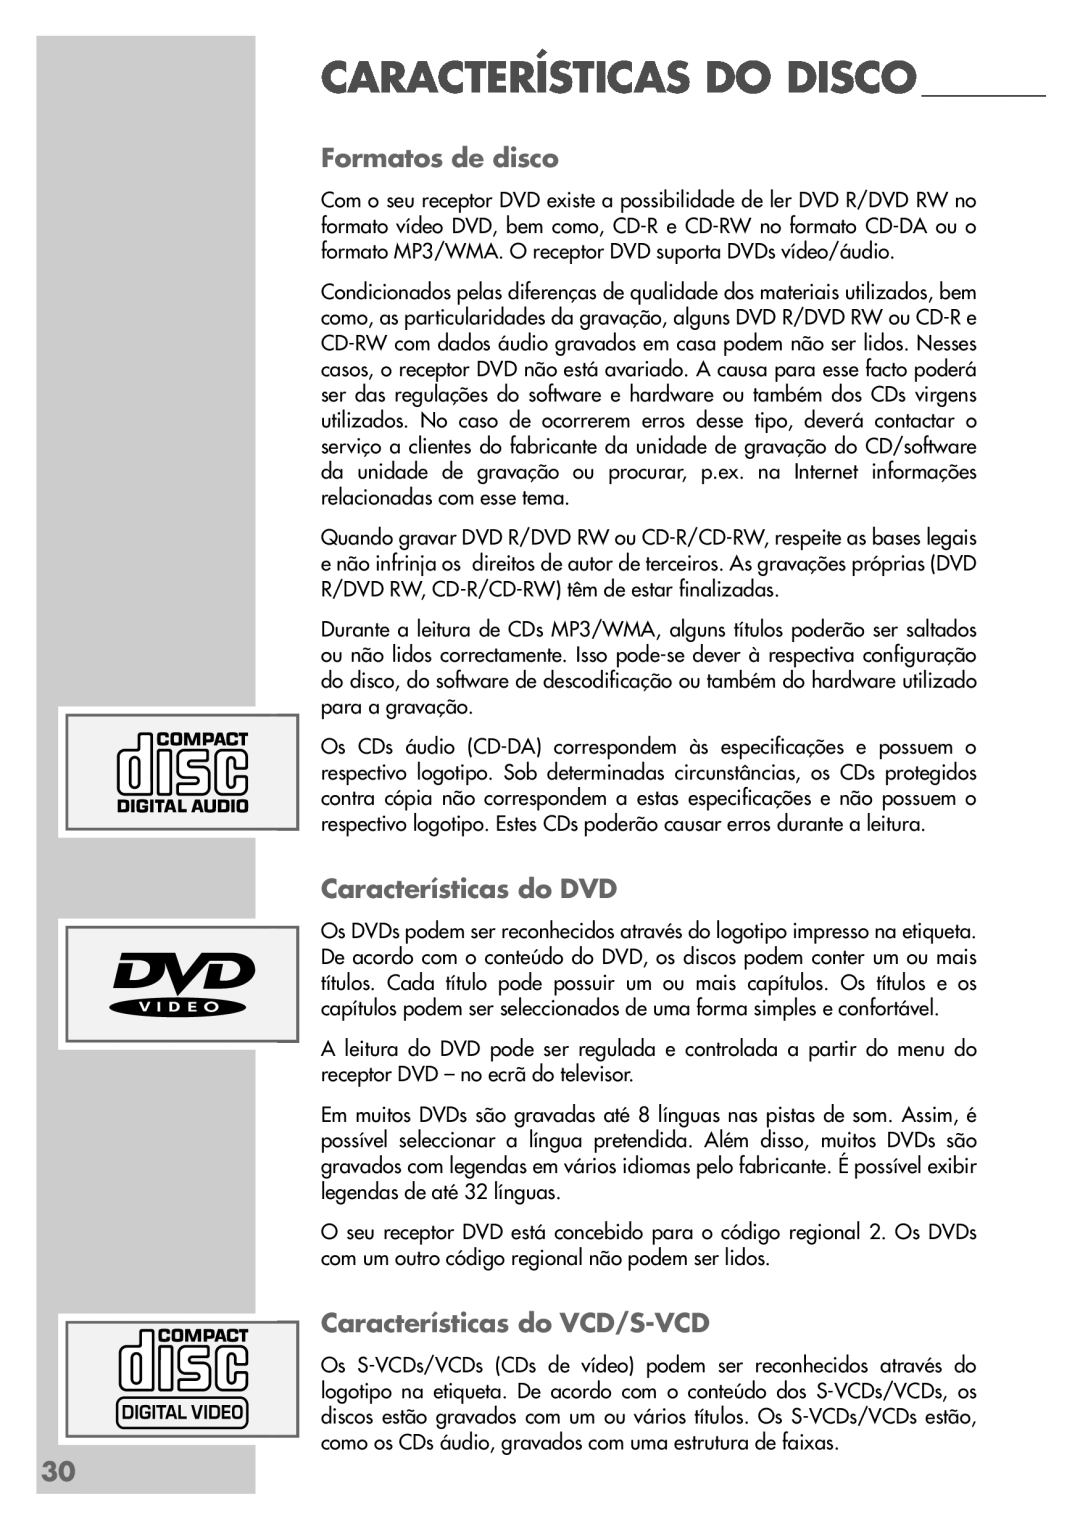 Grundig DR 5400 DD manual Características Do Disco, Formatos de disco, Características do DVD, Características do VCD/S-VCD 